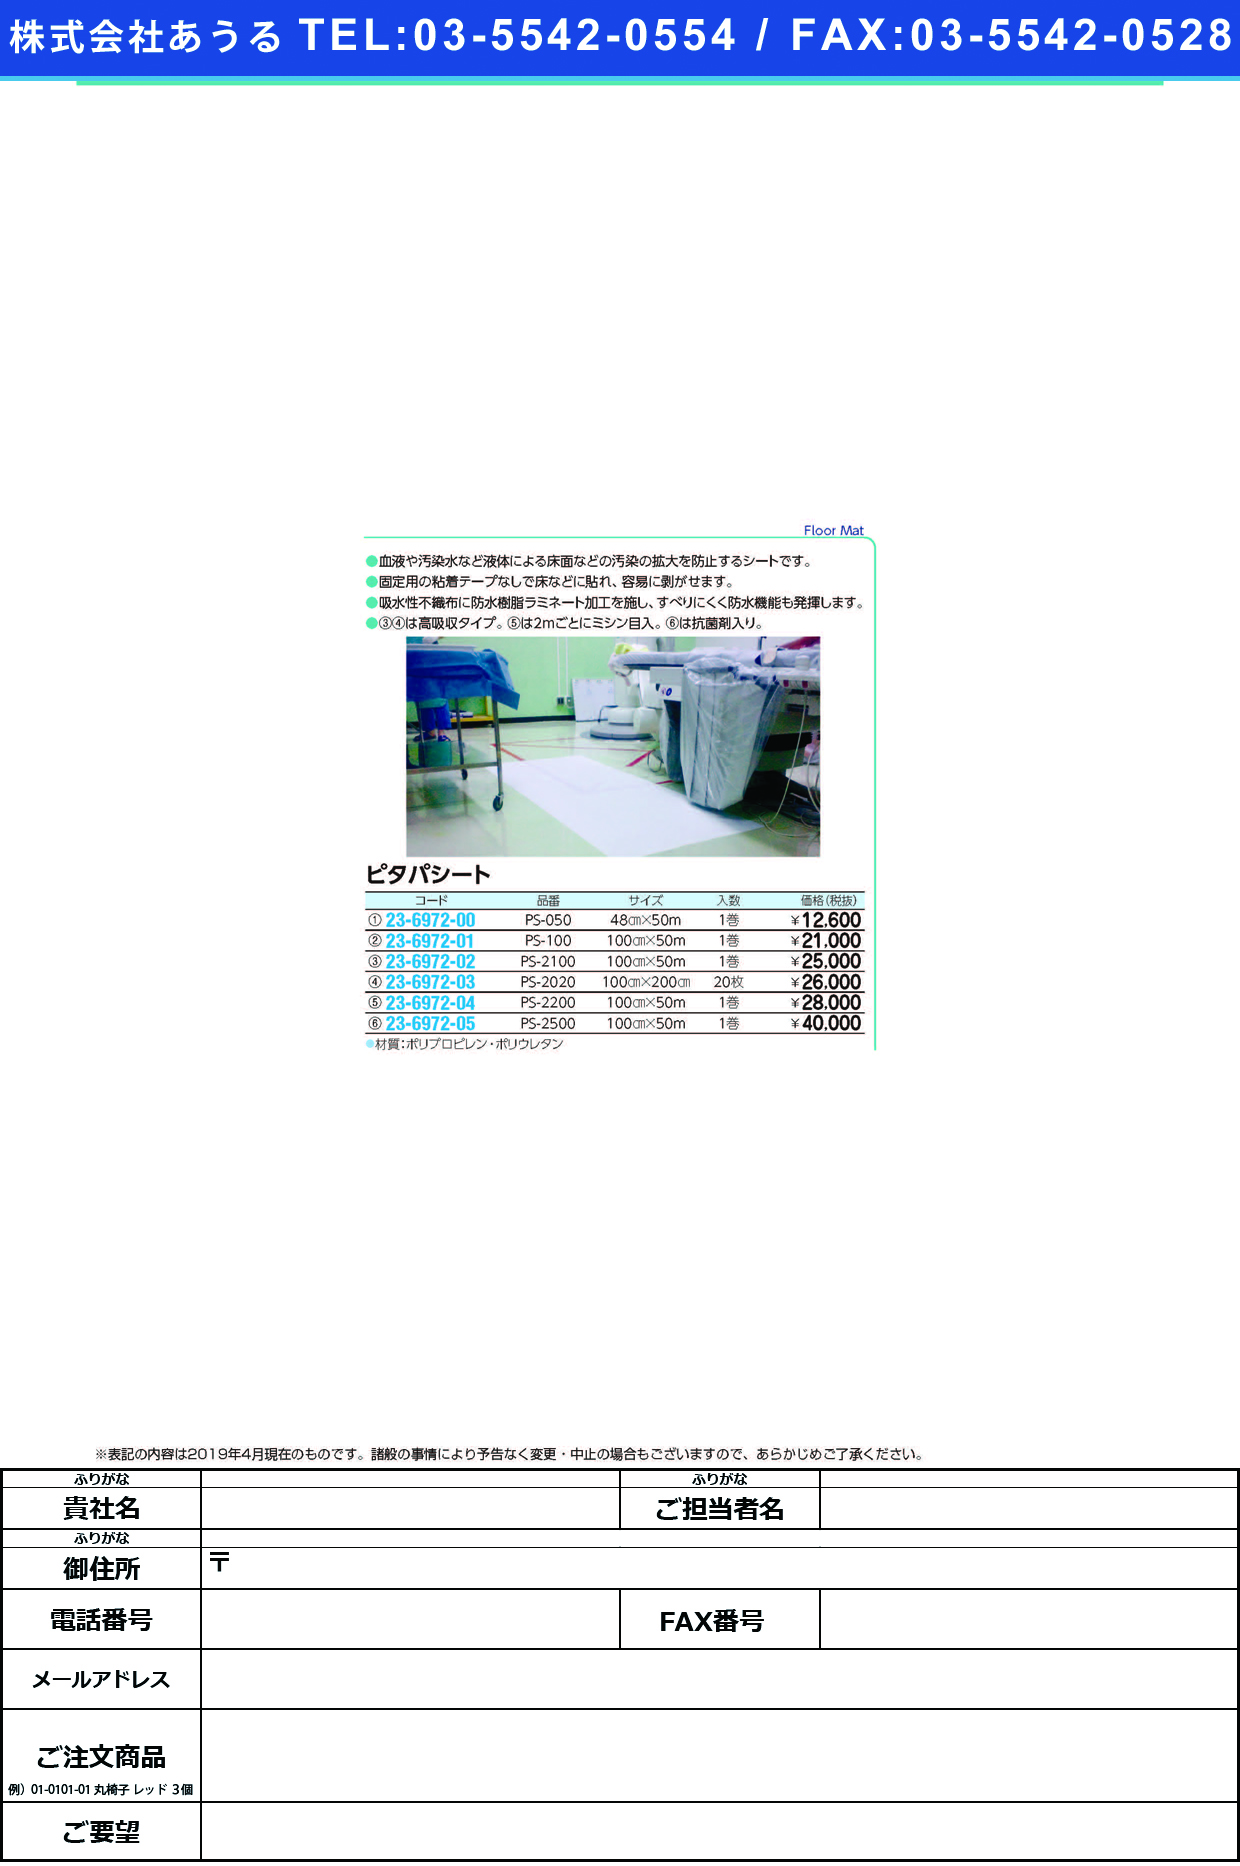 (23-6972-04)ピタパシート PS-2200(100CMX50M) ﾋﾟﾀﾊﾟｼｰﾄ(バイリーンクリエイト)【1梱単位】【2019年カタログ商品】